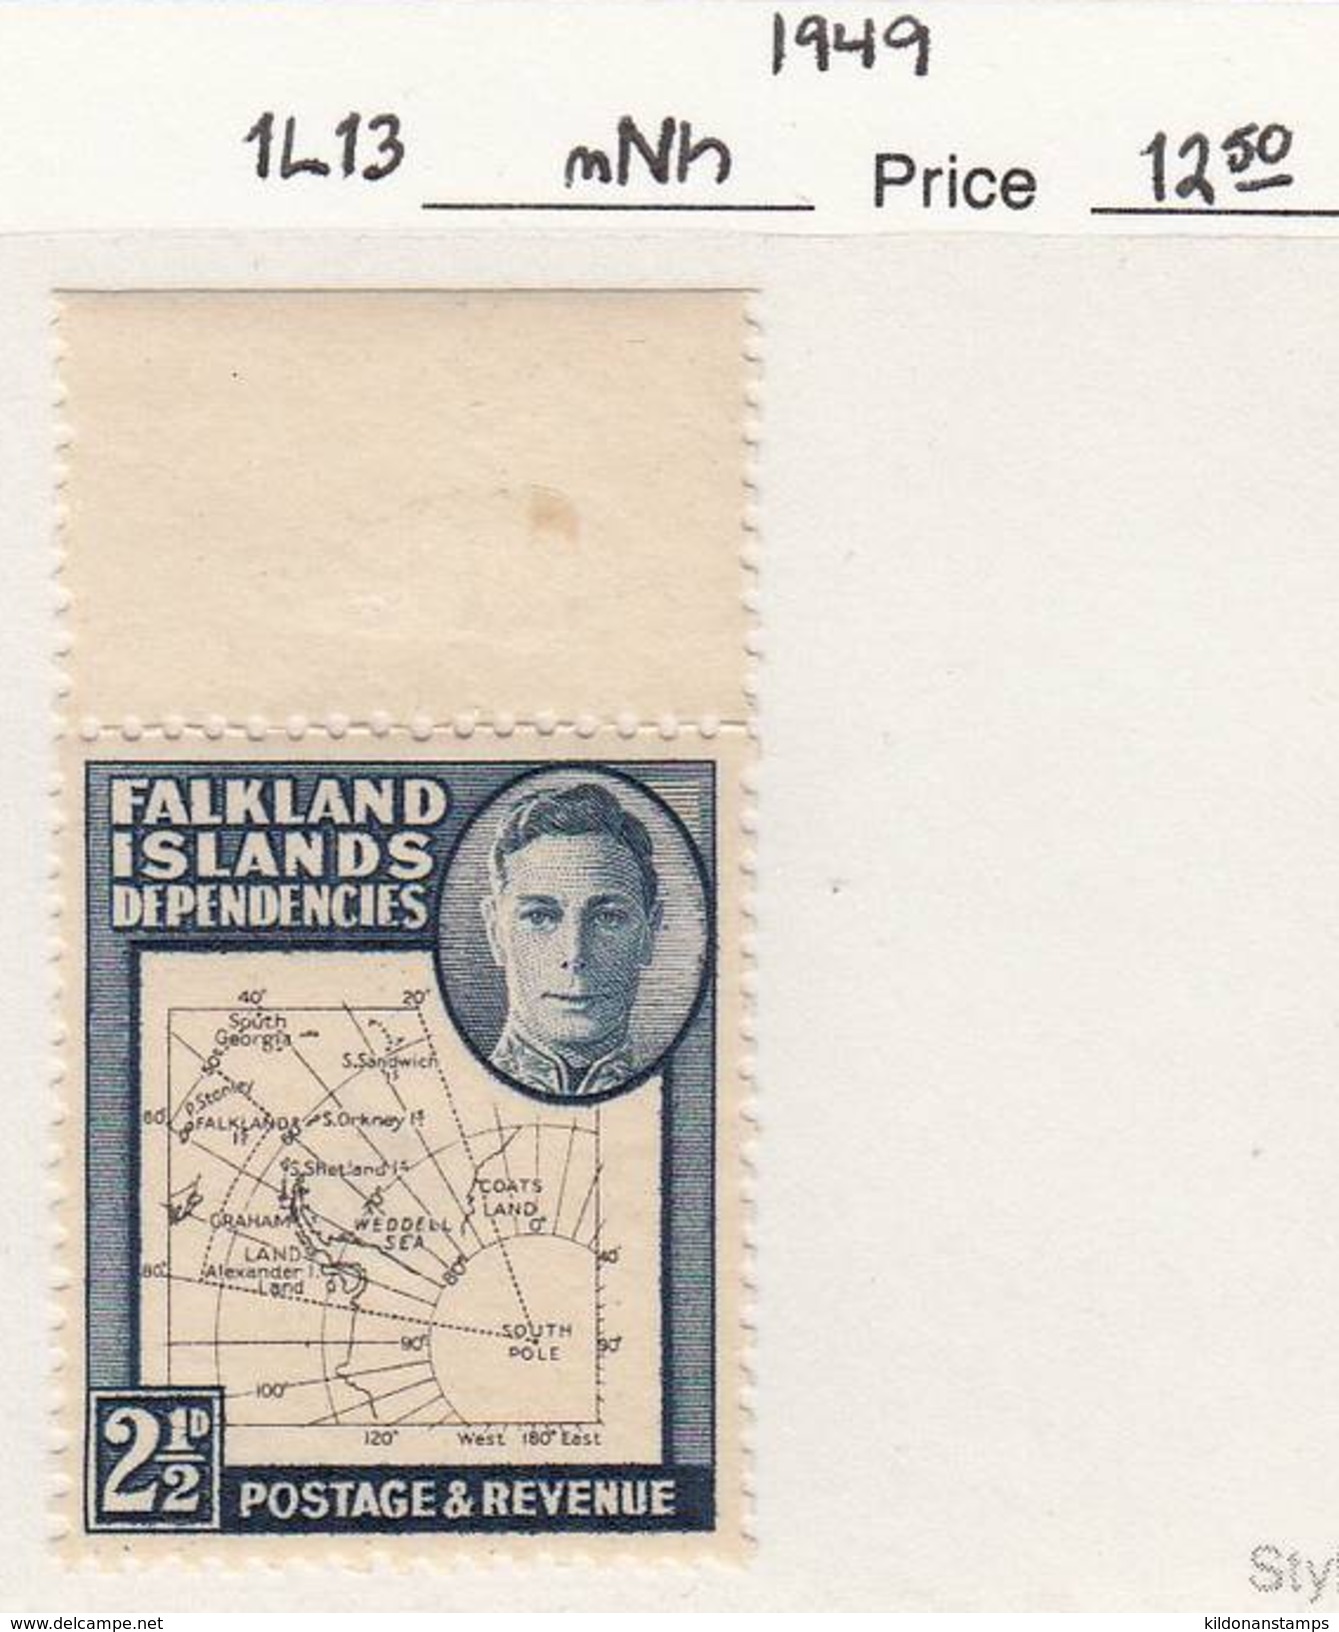 Falkland Islands Dep. 1949 Mint No Hinge, Sc# 1L13, SG G11b - Falklandinseln